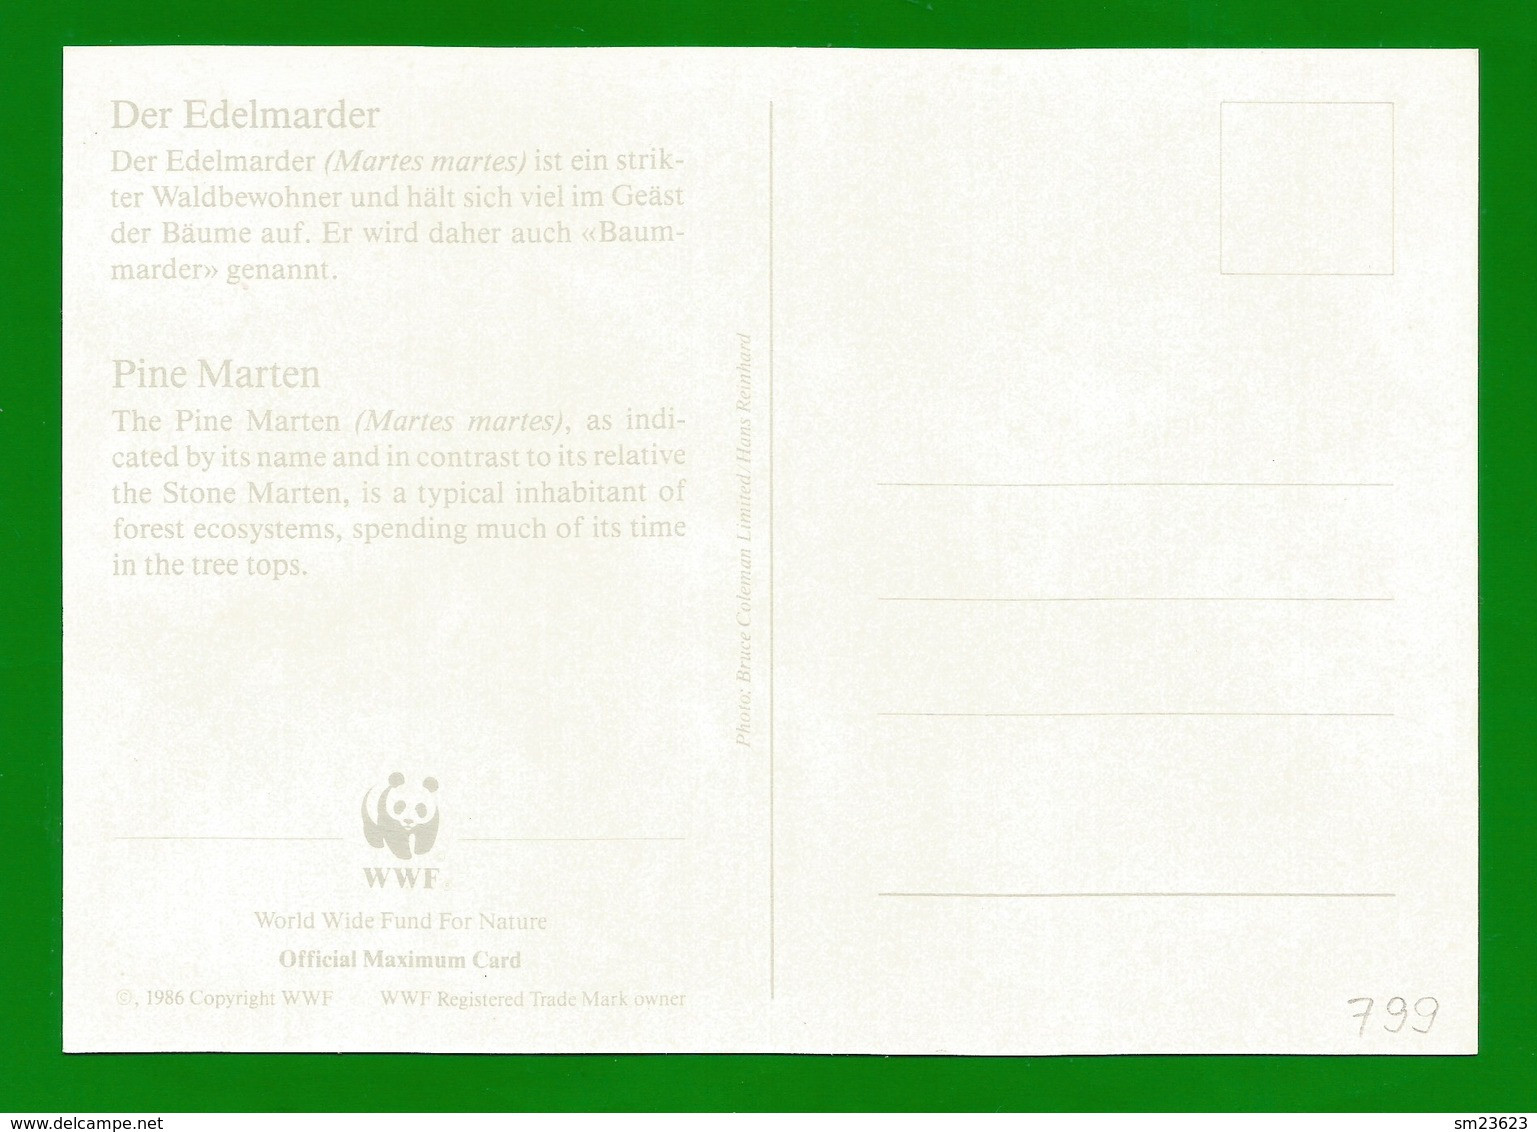 Irland 1992  Mi.Nr. 799 , Pine Marten (Der Edelmarder) - WWF Maximum Card - First Day 9.VII.1992 - Maximum Cards